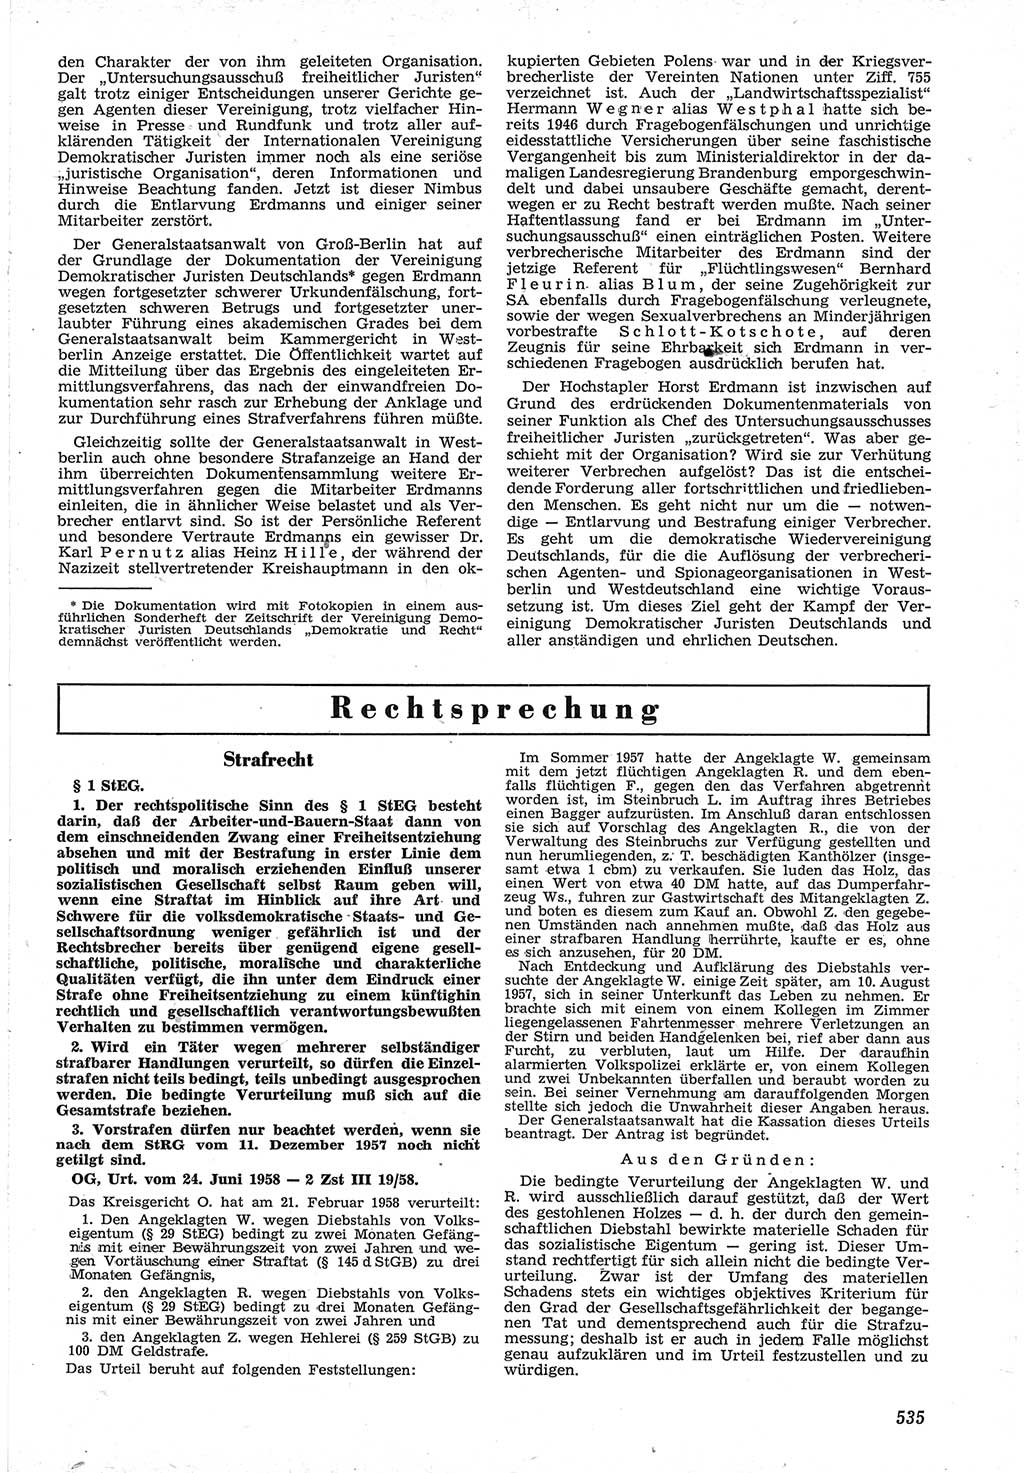 Neue Justiz (NJ), Zeitschrift für Recht und Rechtswissenschaft [Deutsche Demokratische Republik (DDR)], 12. Jahrgang 1958, Seite 535 (NJ DDR 1958, S. 535)